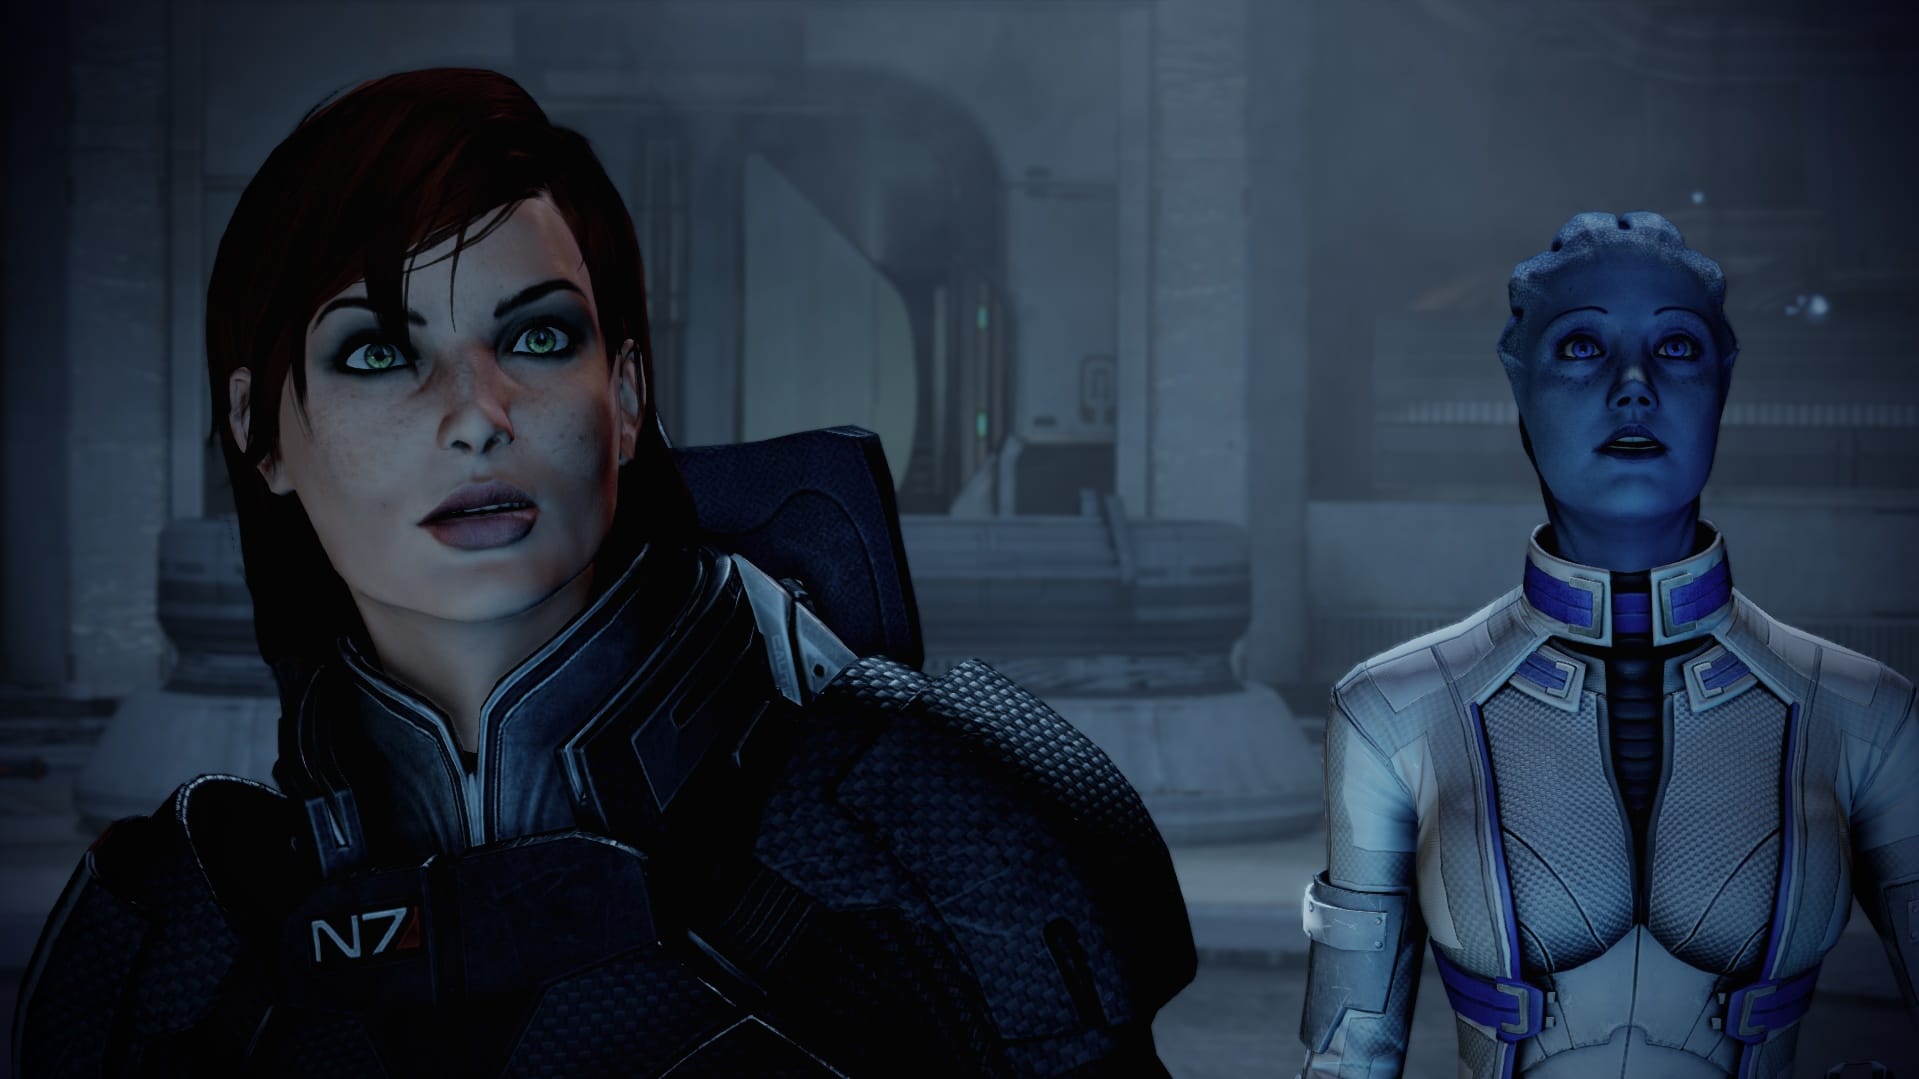 Expressões faciais que falam volumes. Mass Effect 2 é sempre bom para uma surpresa